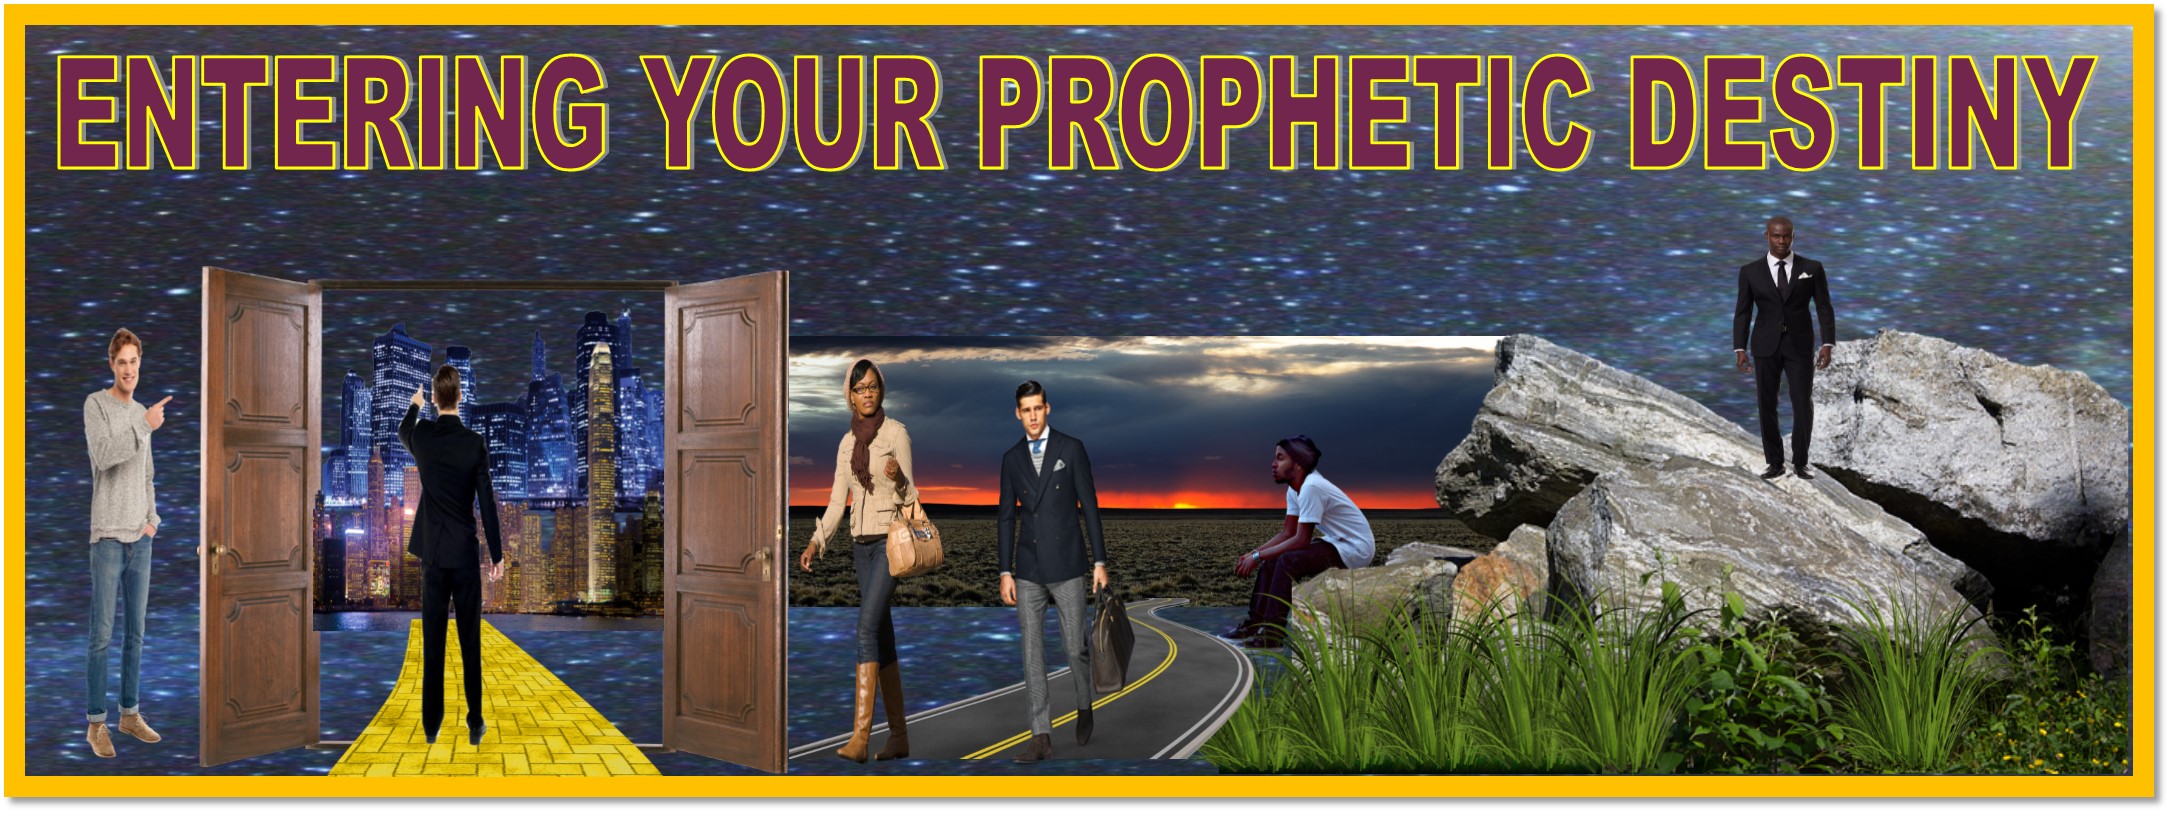 ENTERING YOUR PROPHETIC DESTINY WEBSITE HEADER 4-8-2021